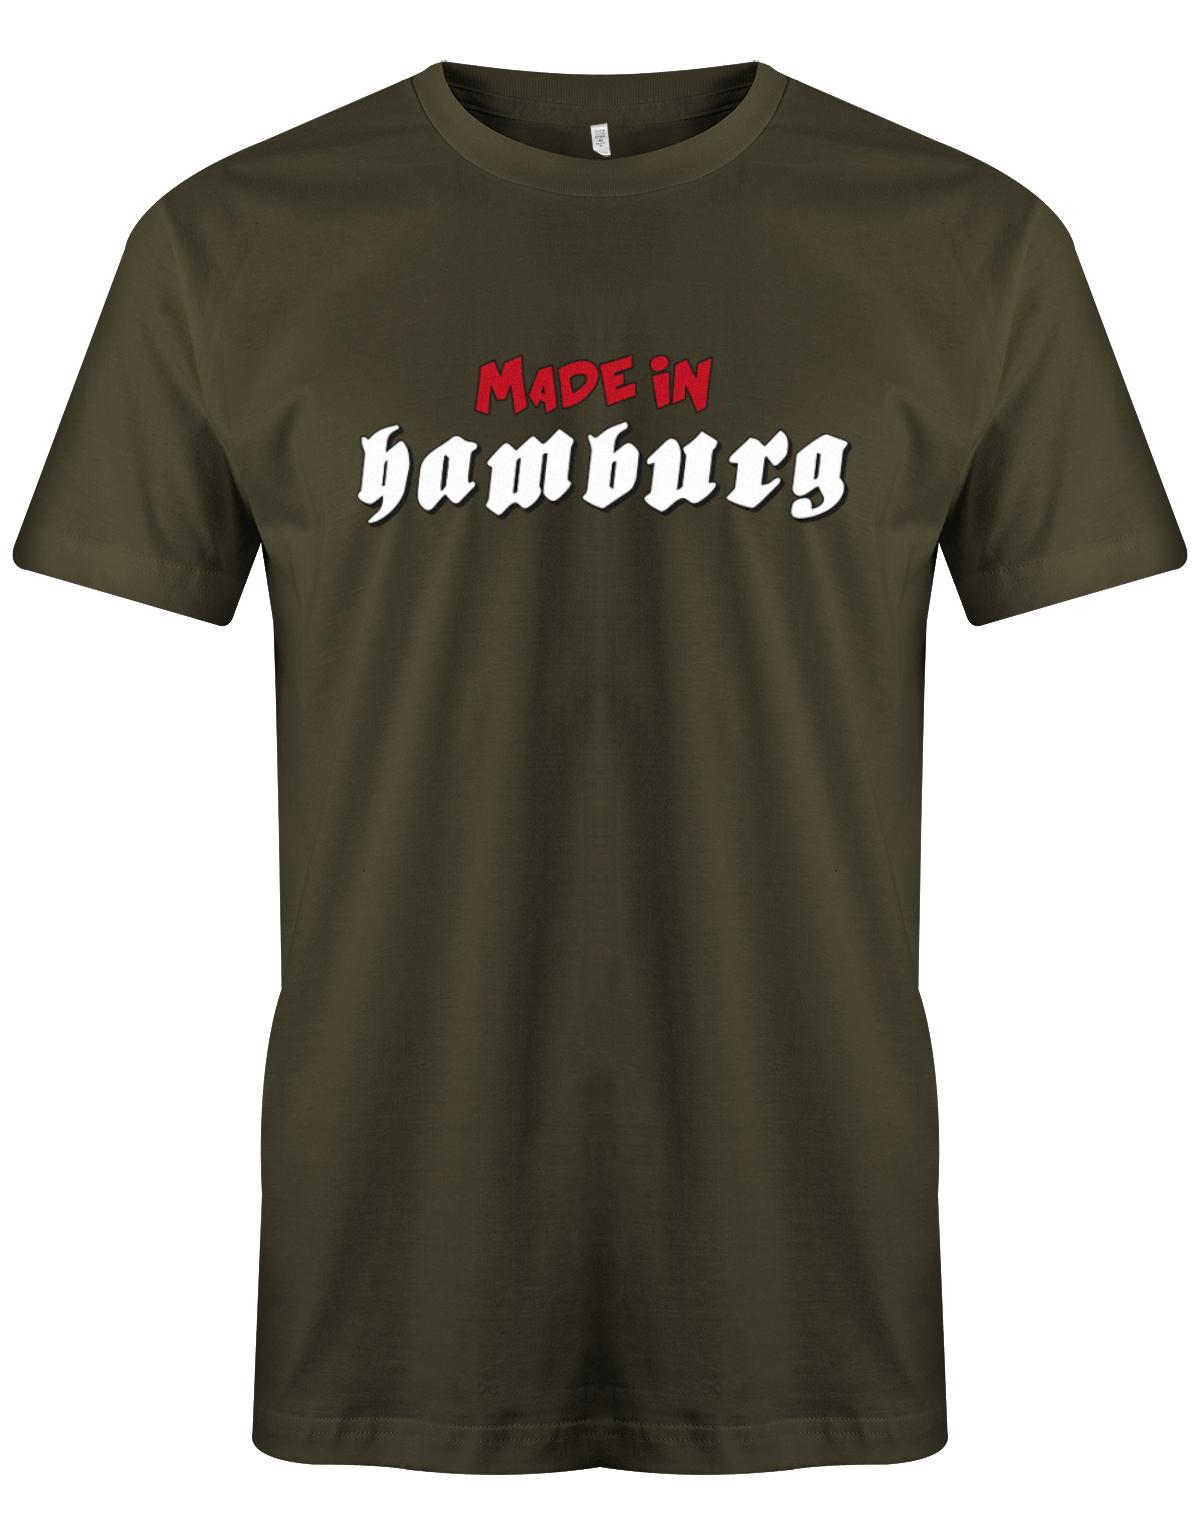 Made-in-Hamburg-Shirt-Herren-Army